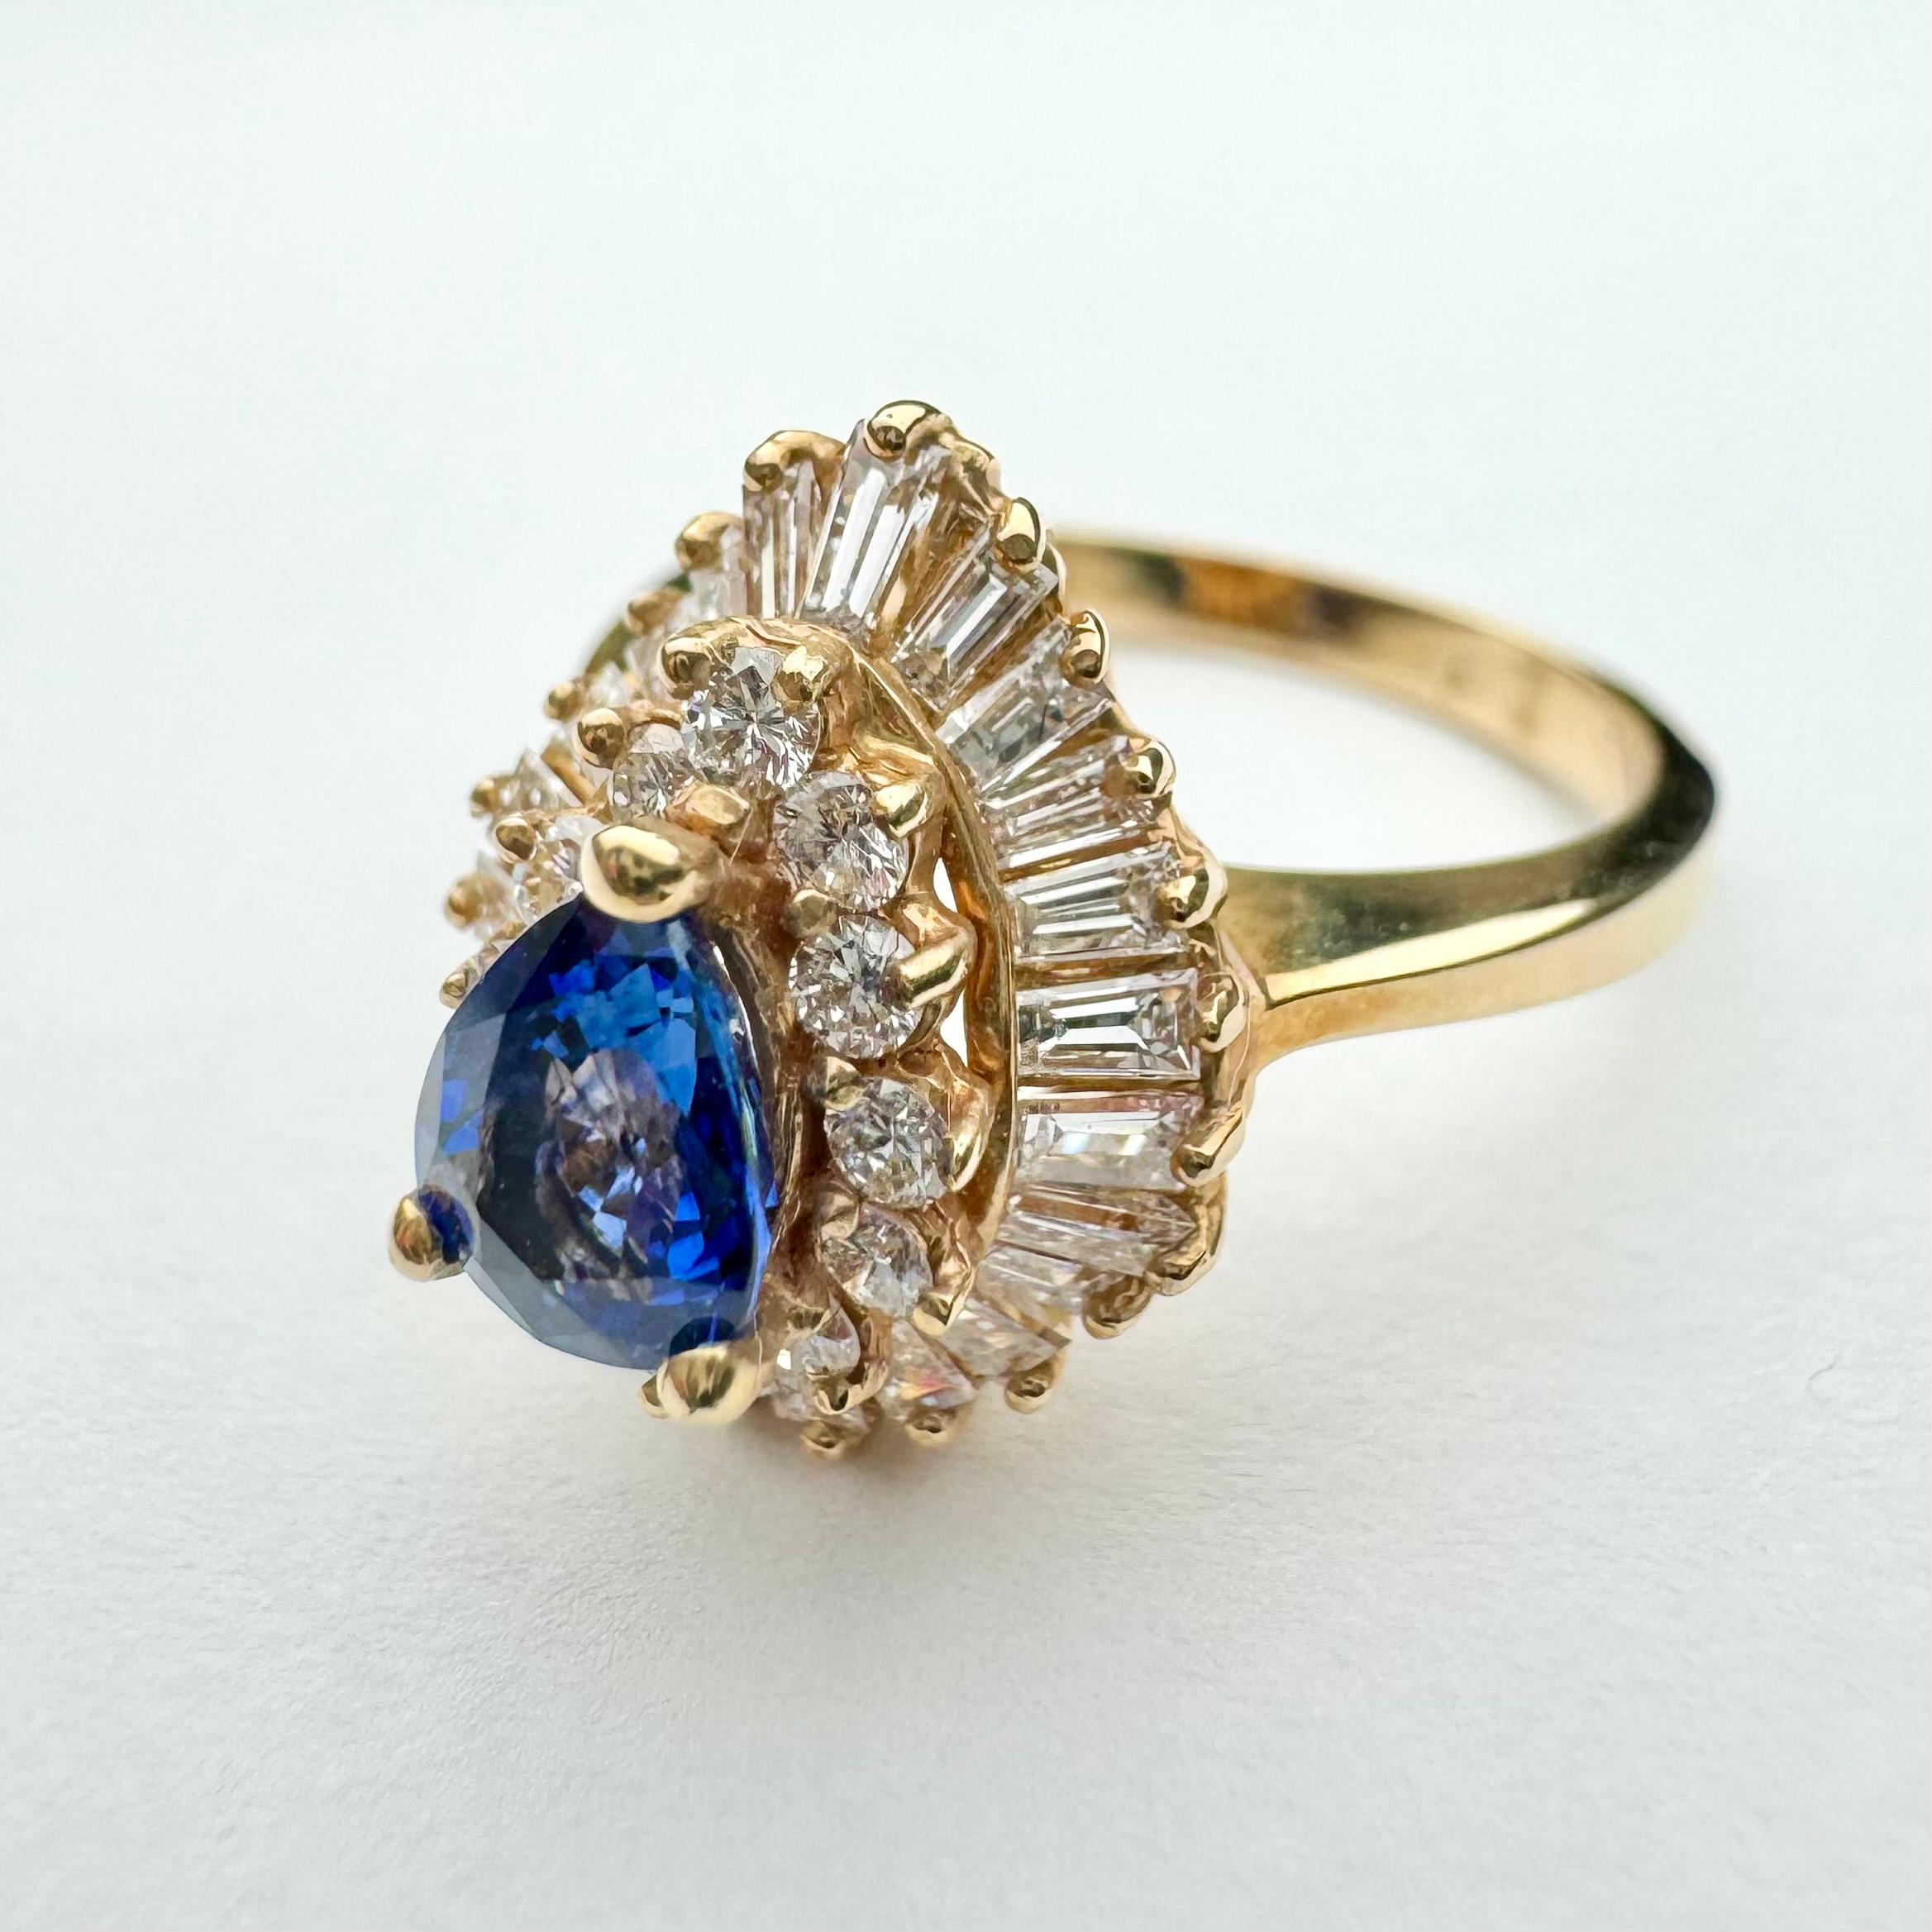 Wunderschöner blauer, birnenförmiger Saphir- und Diamantring aus 14 Karat Gelbgold mit Piercing.
Einzigartig und meisterhaft in doppeltem Halo gefasst. Der innere Halo besteht aus 12 funkelnden weißen runden Diamanten und der äußere Halo ist im